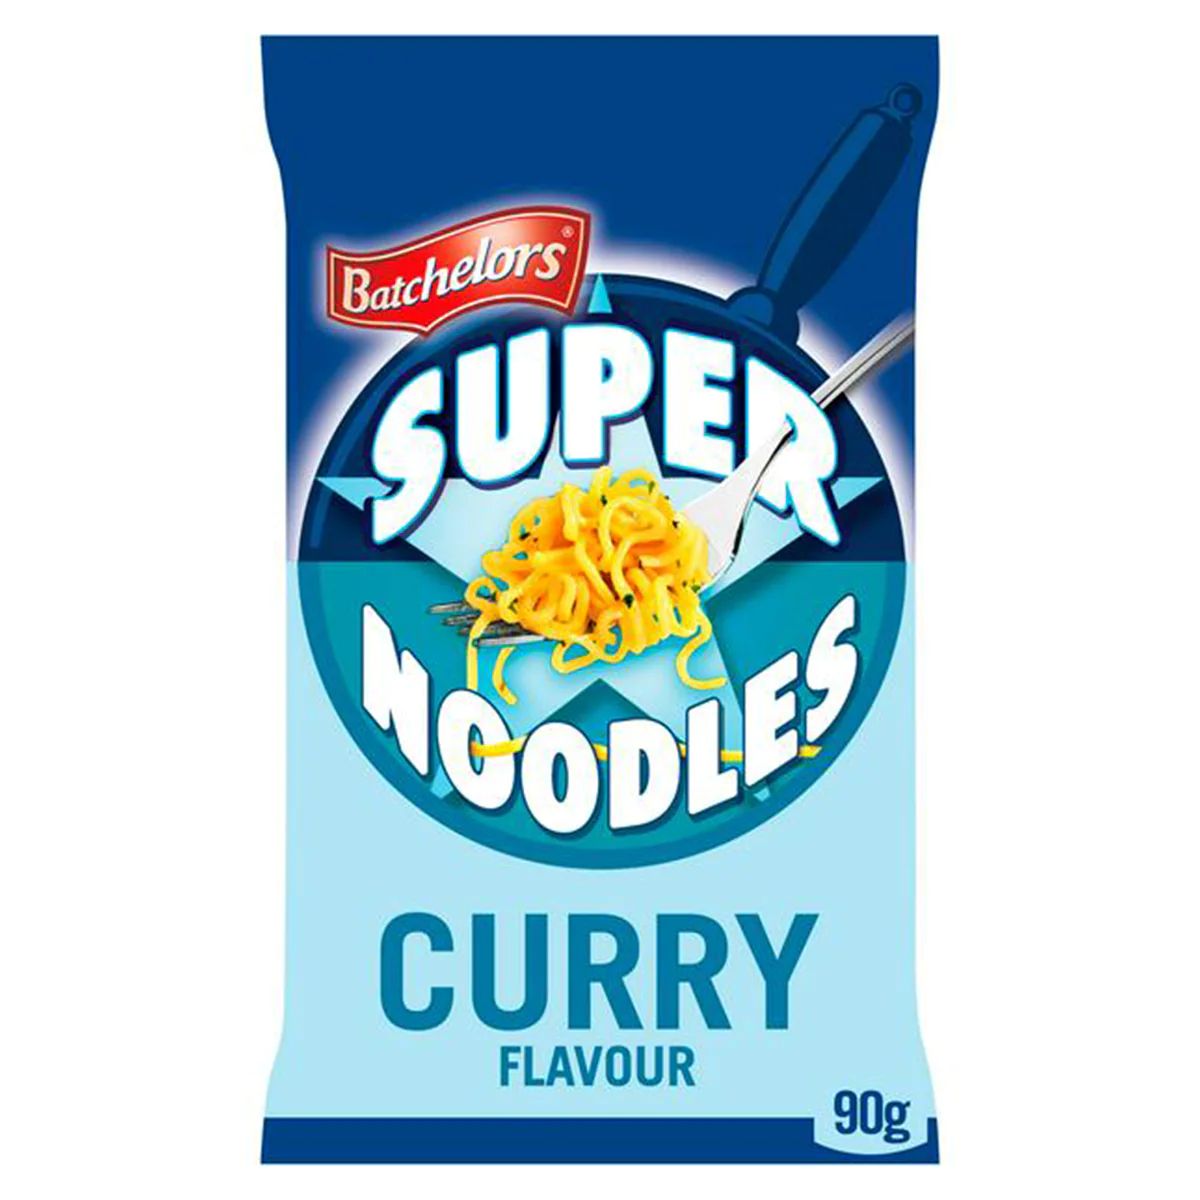 A package of Batchelors - Super Noodles Curry Flavour Noodle Block - 90g.